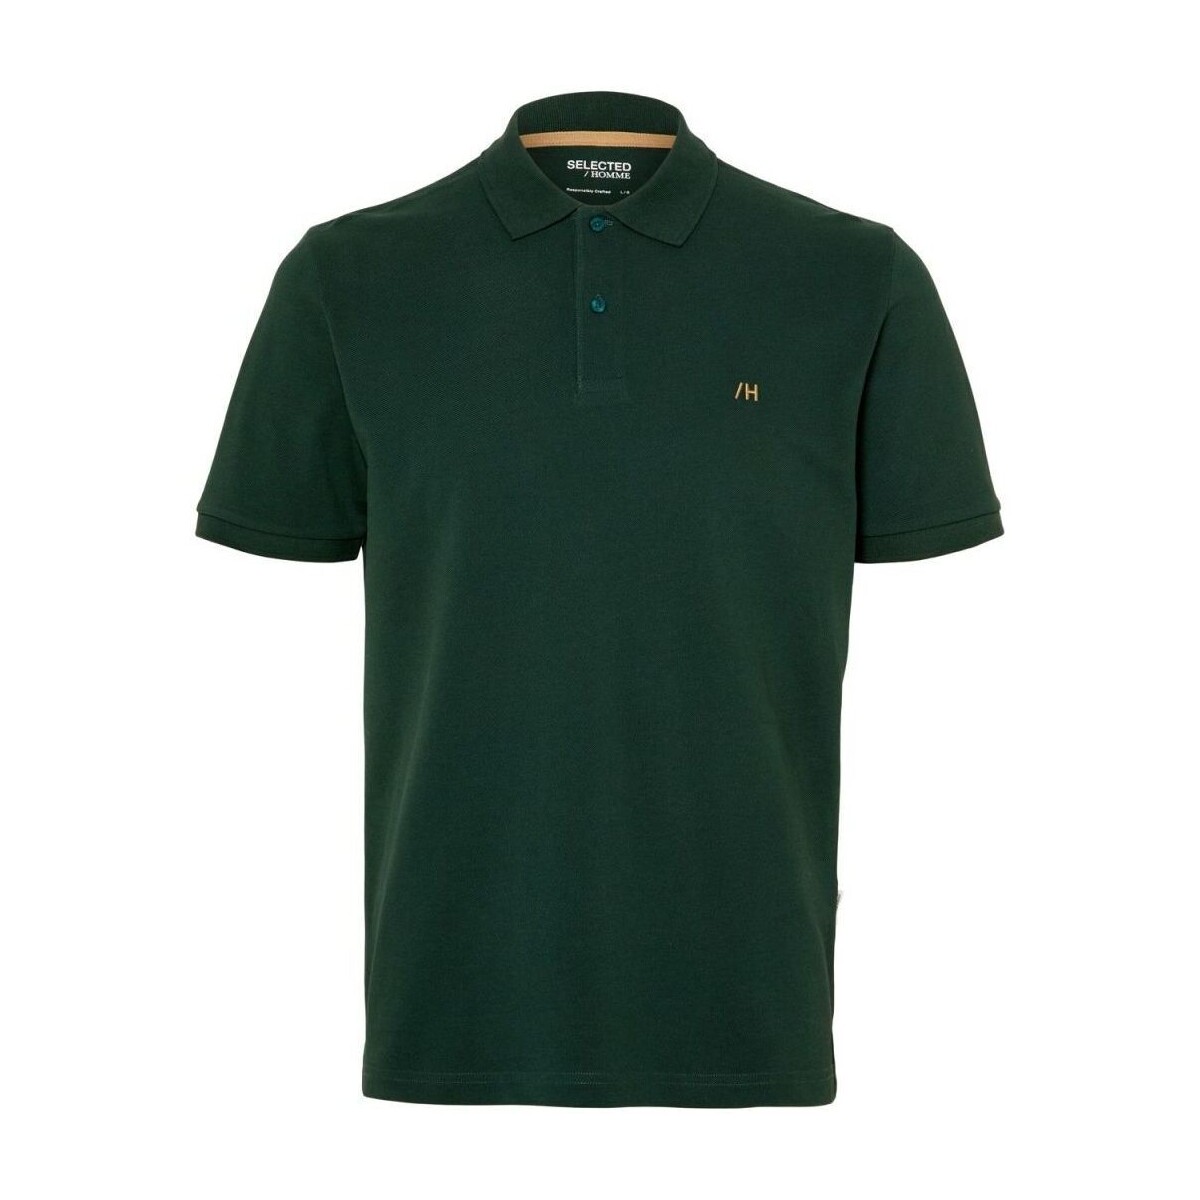 Kleidung Herren T-Shirts & Poloshirts Selected 16087839 DANTE-TREKKING GREEN Grün